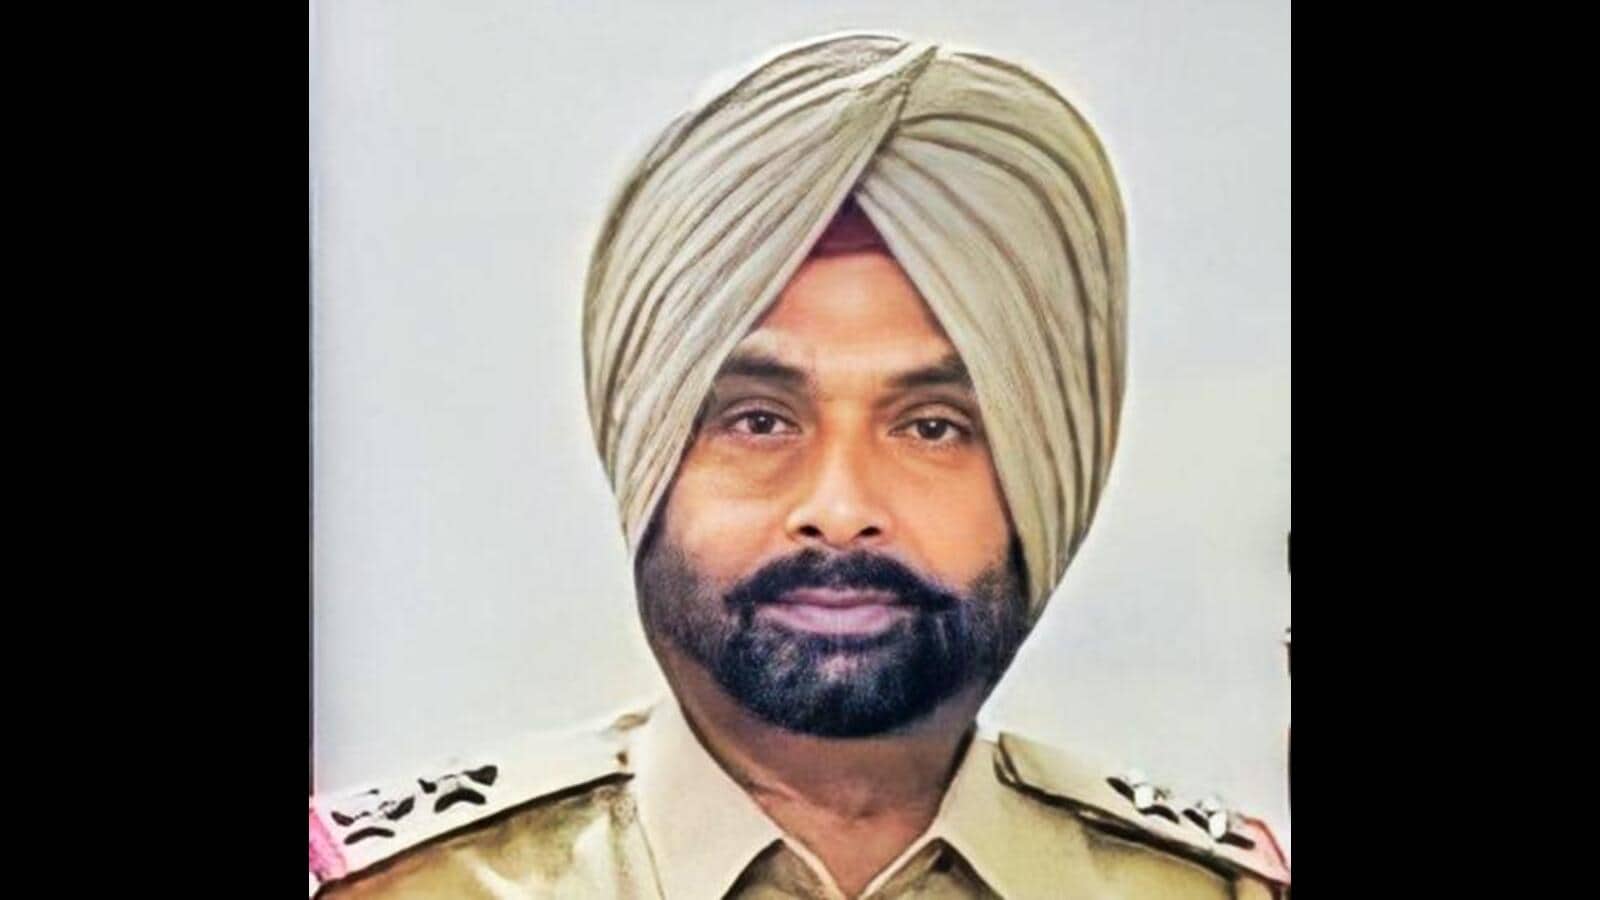 ashwani kumar (police officer)